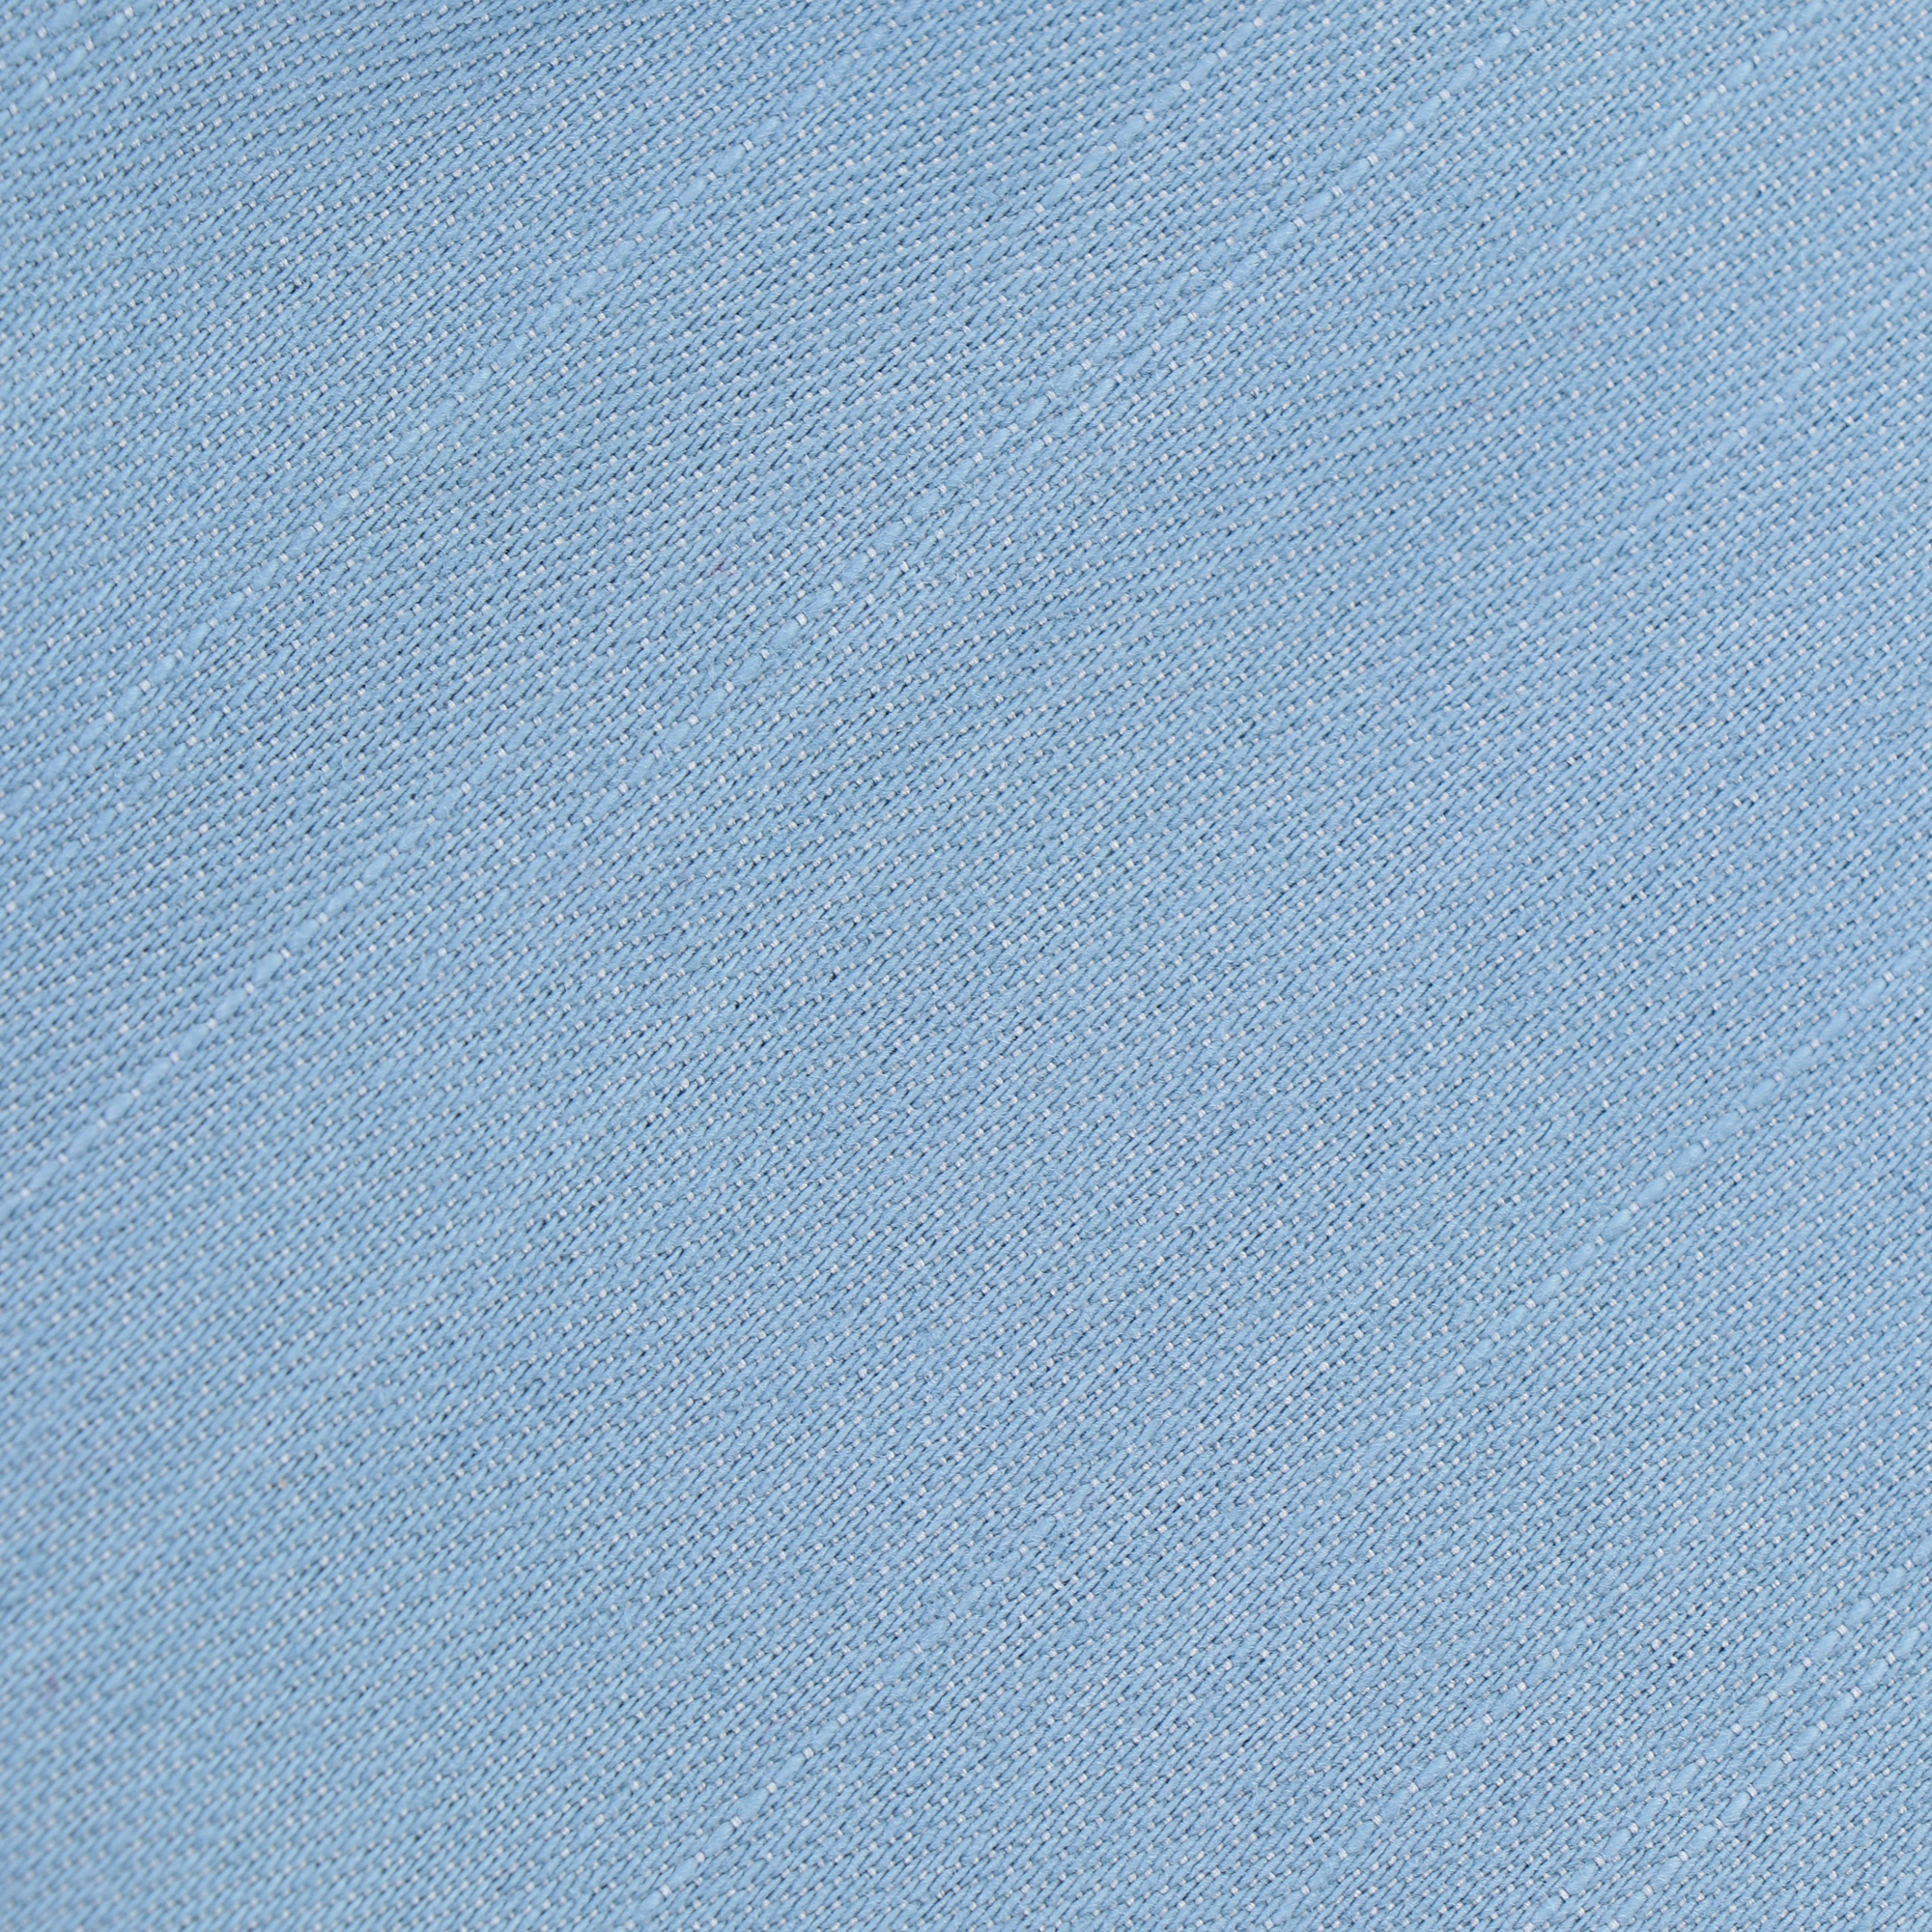 Шорты женские Joyord голубые L, цвет голубой, размер L - фото 3